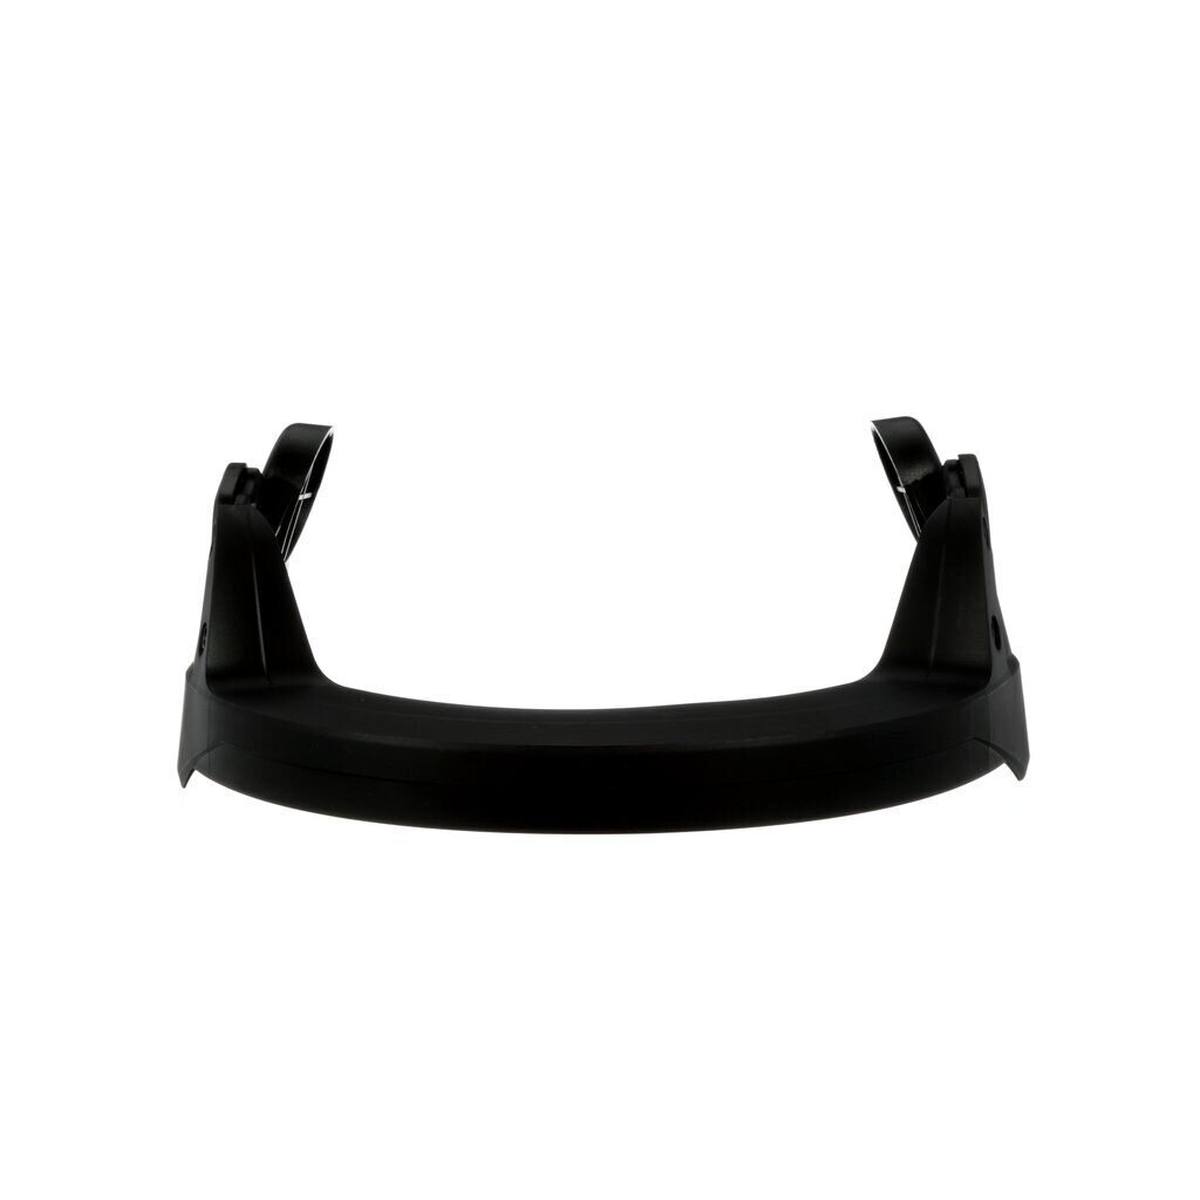 3M U5B-CE visor holder for SecureFit safety helmets